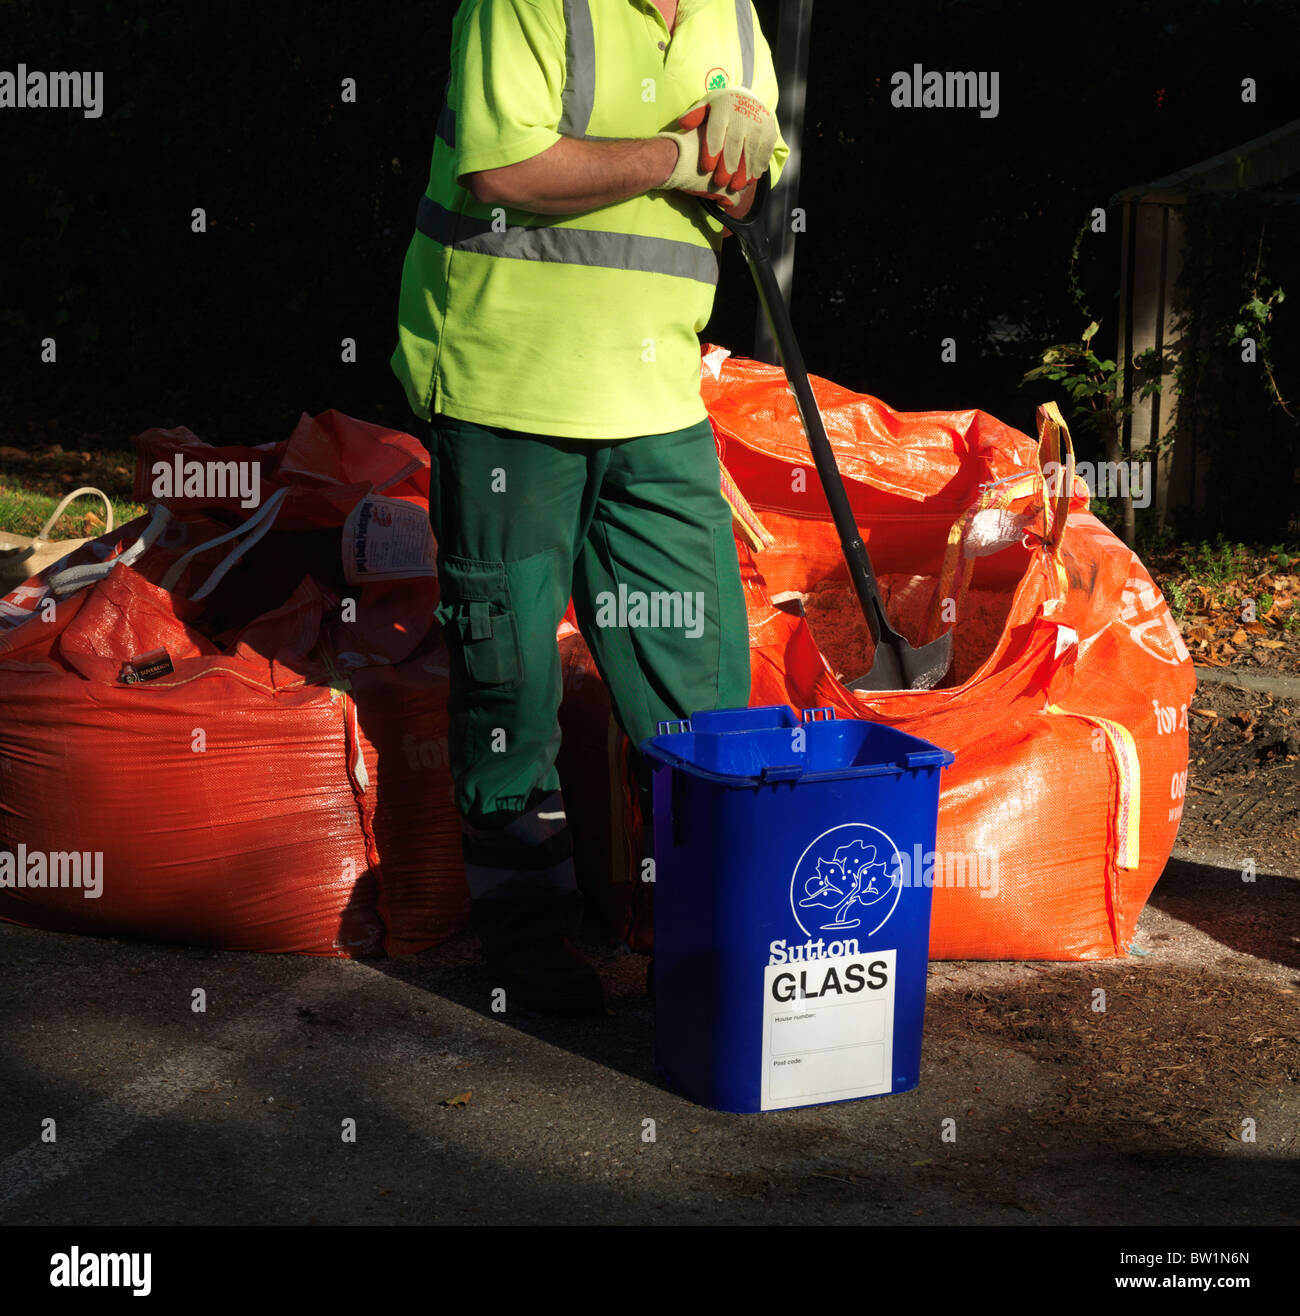 Bac de recyclage de verre bleu rempli de conseil gratuit Grit donnez loin la préparation de prévisions de mauvais temps, London Borough of Sutton Banque D'Images